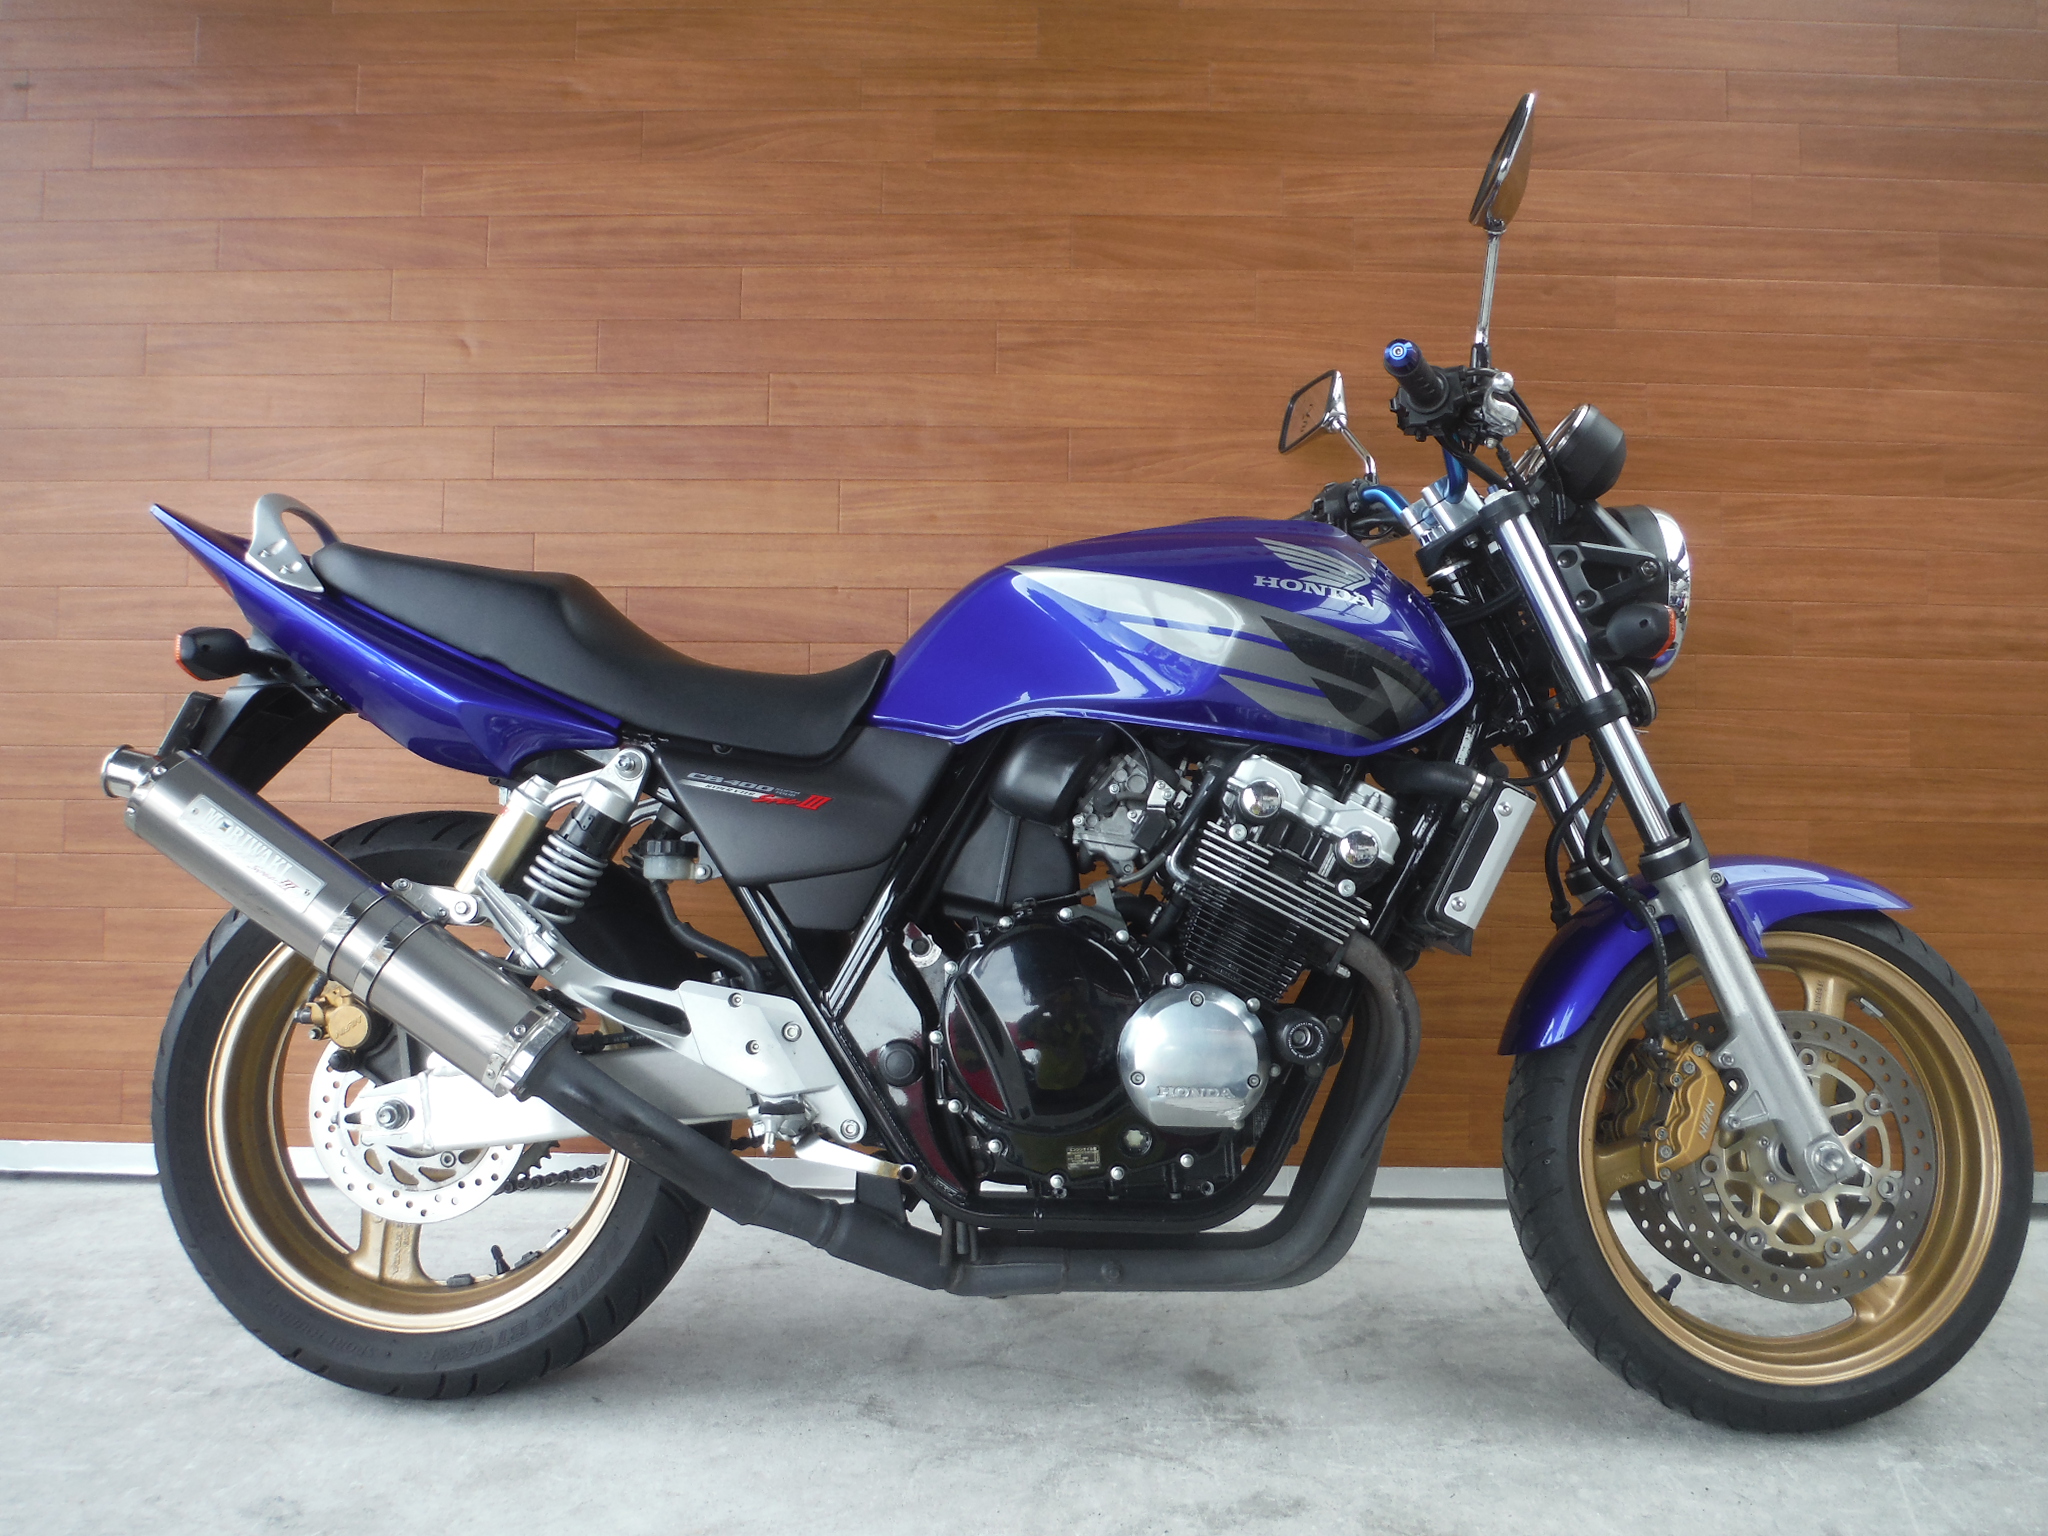 熊本中古車バイク情報 ホンダ Cb400sf 400 05年モデル 青 熊本のバイクショップ アール バイクの新車 中古車販売や買取 レンタルバイクのことならおまかせください